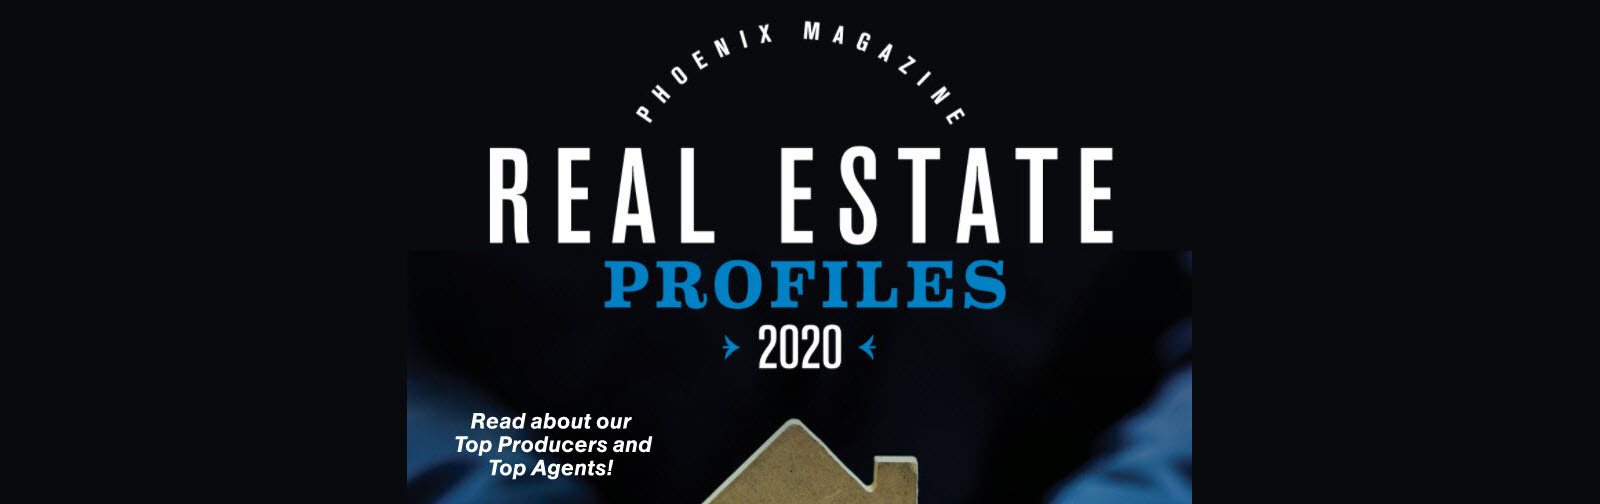 Real Estate Profiles 2020